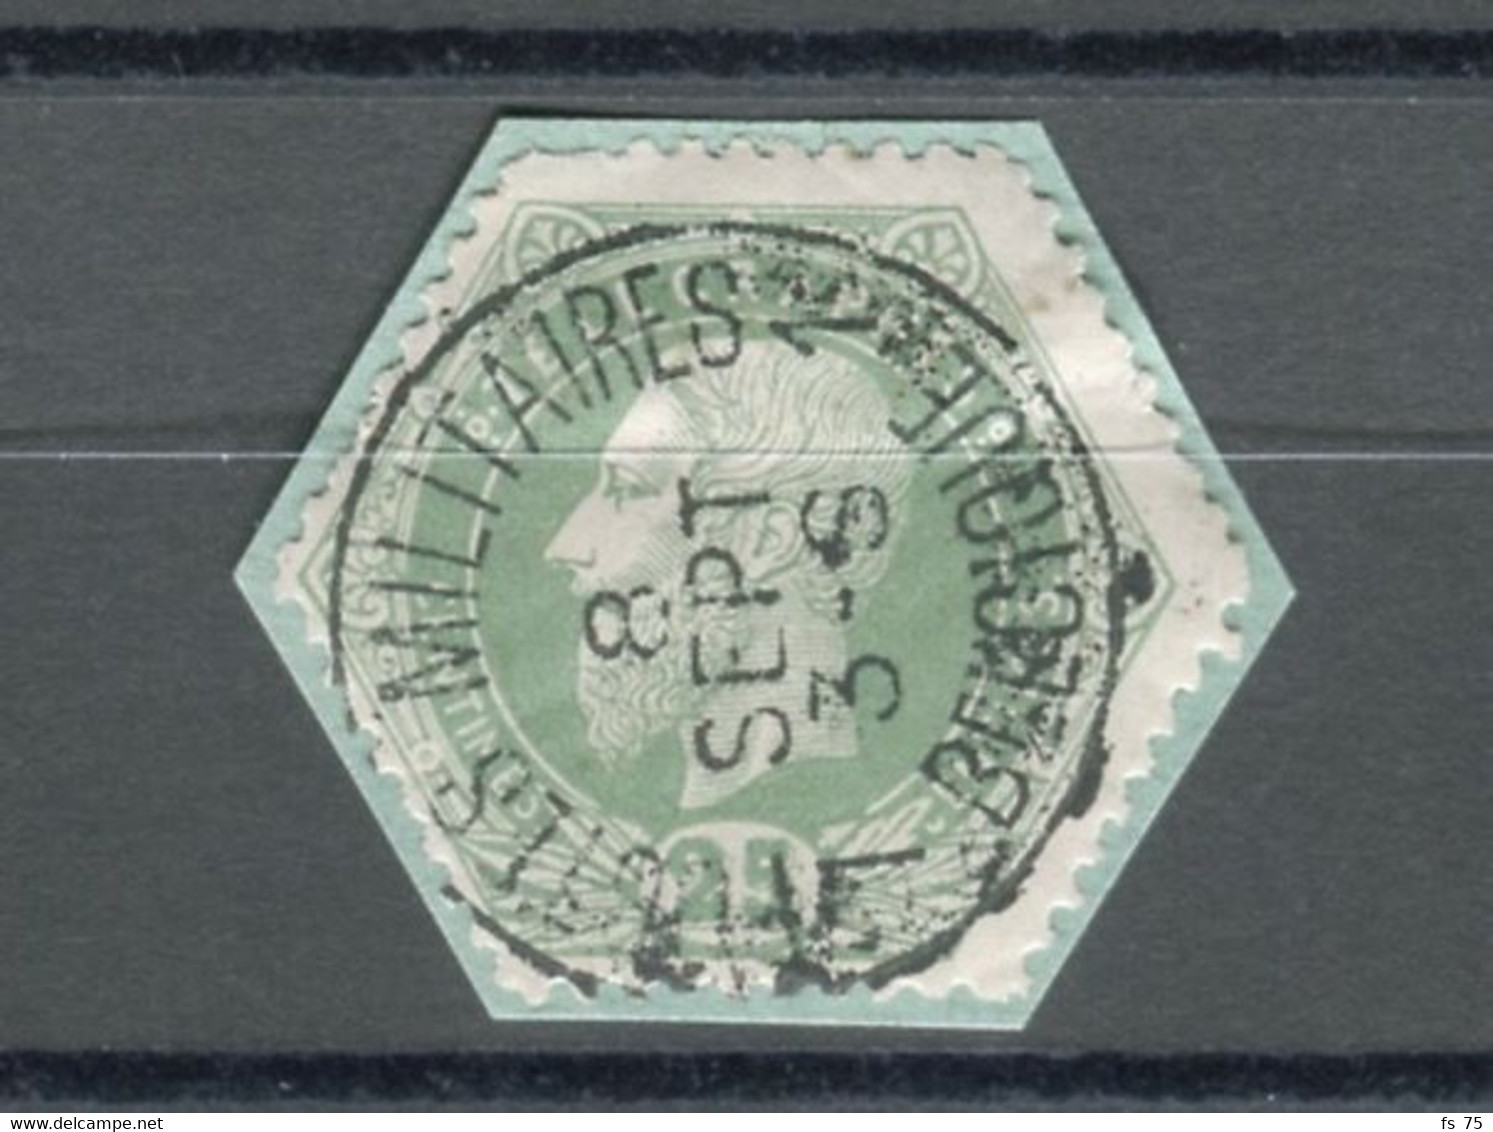 BELGIQUE - COB T6 12 25C VERT SIMPLE CERCLE POSTES MILITAIRES 1 BELGIQUE - Stamps